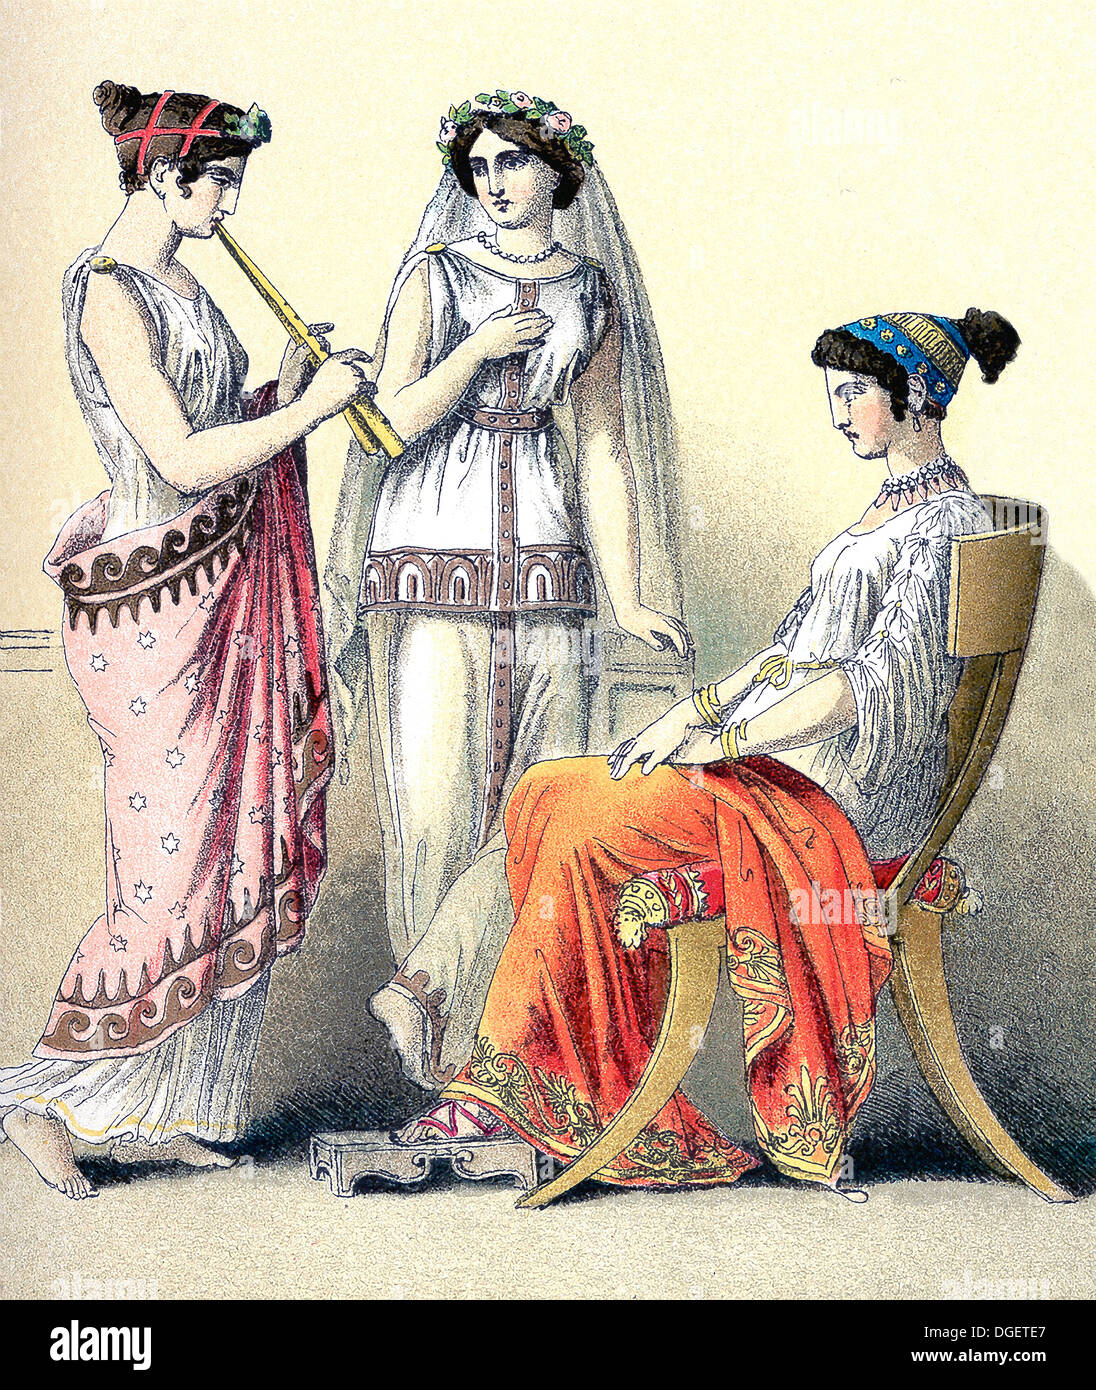 Le figure illustrano le donne greche, da sinistra a destra: flauto-player e due donne delle classi superiori. Foto Stock